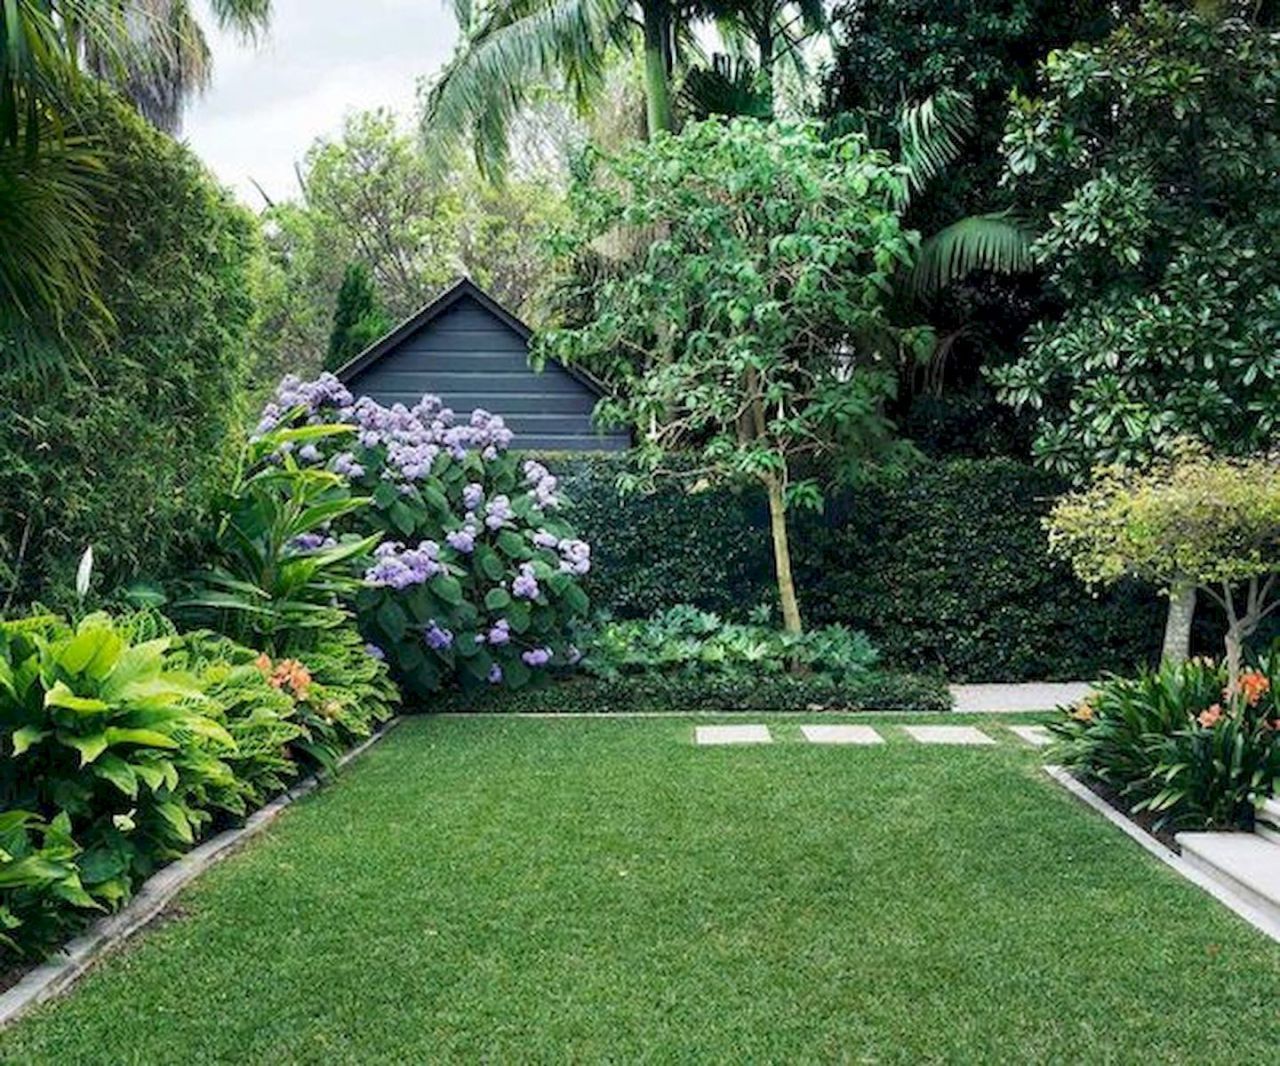 Kleingarten Gestalten Ideen Best Of 60 Beautiful Backyard Garden Design Ideas and Remodel 12